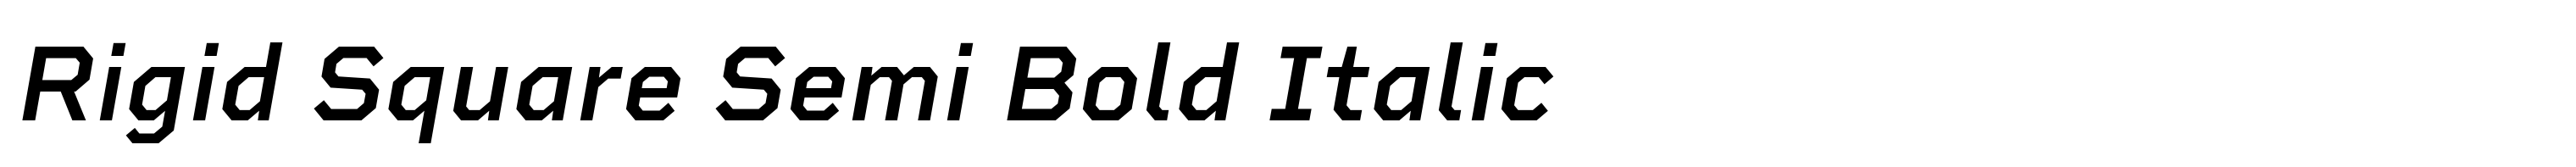 Rigid Square Semi Bold Italic